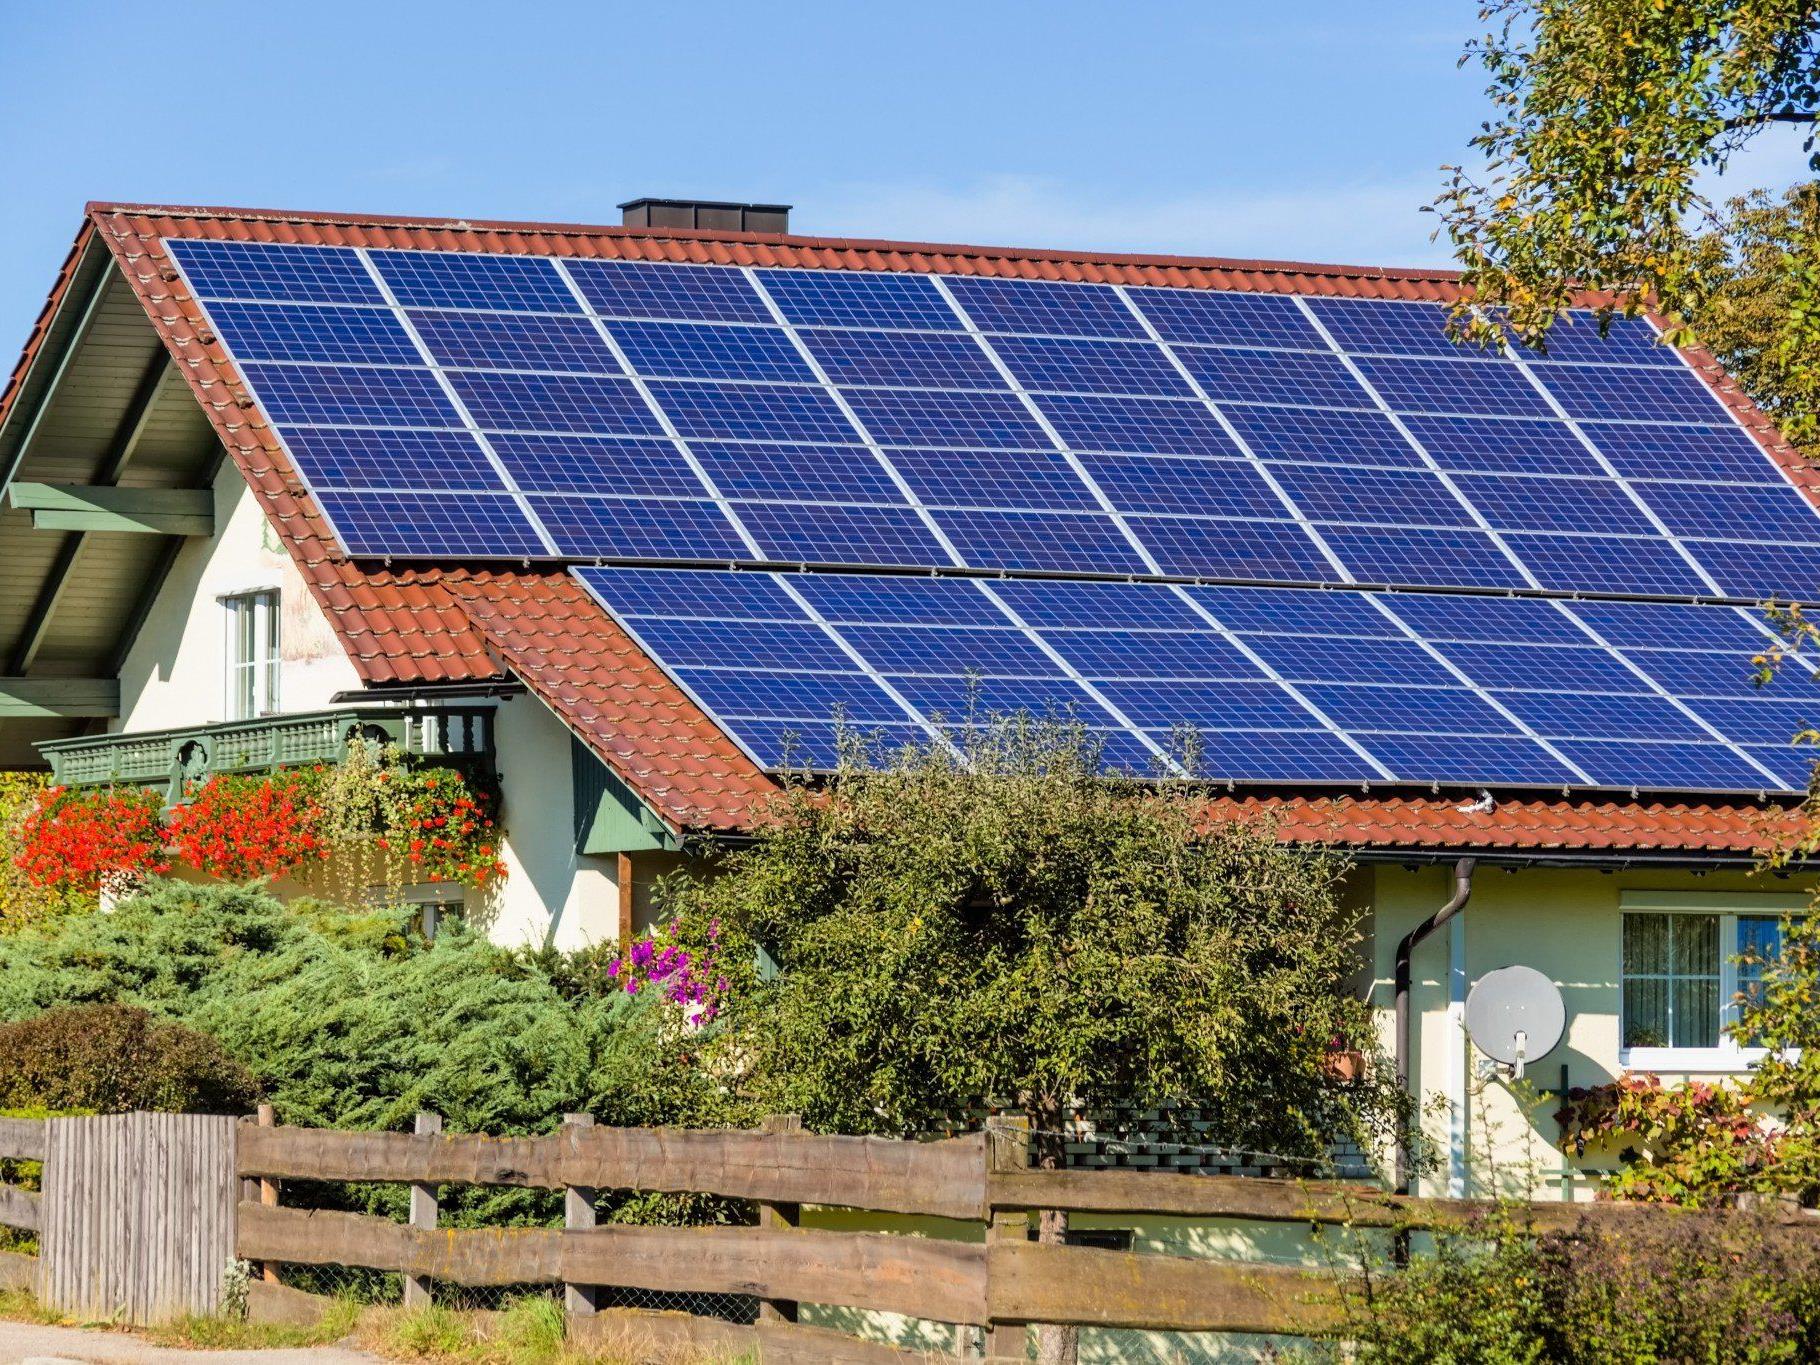 Laut der neuen Sonnensteuer ist selbsterzeugter Solarstrom abgabepflichtig. Salzburg will sich wehren.